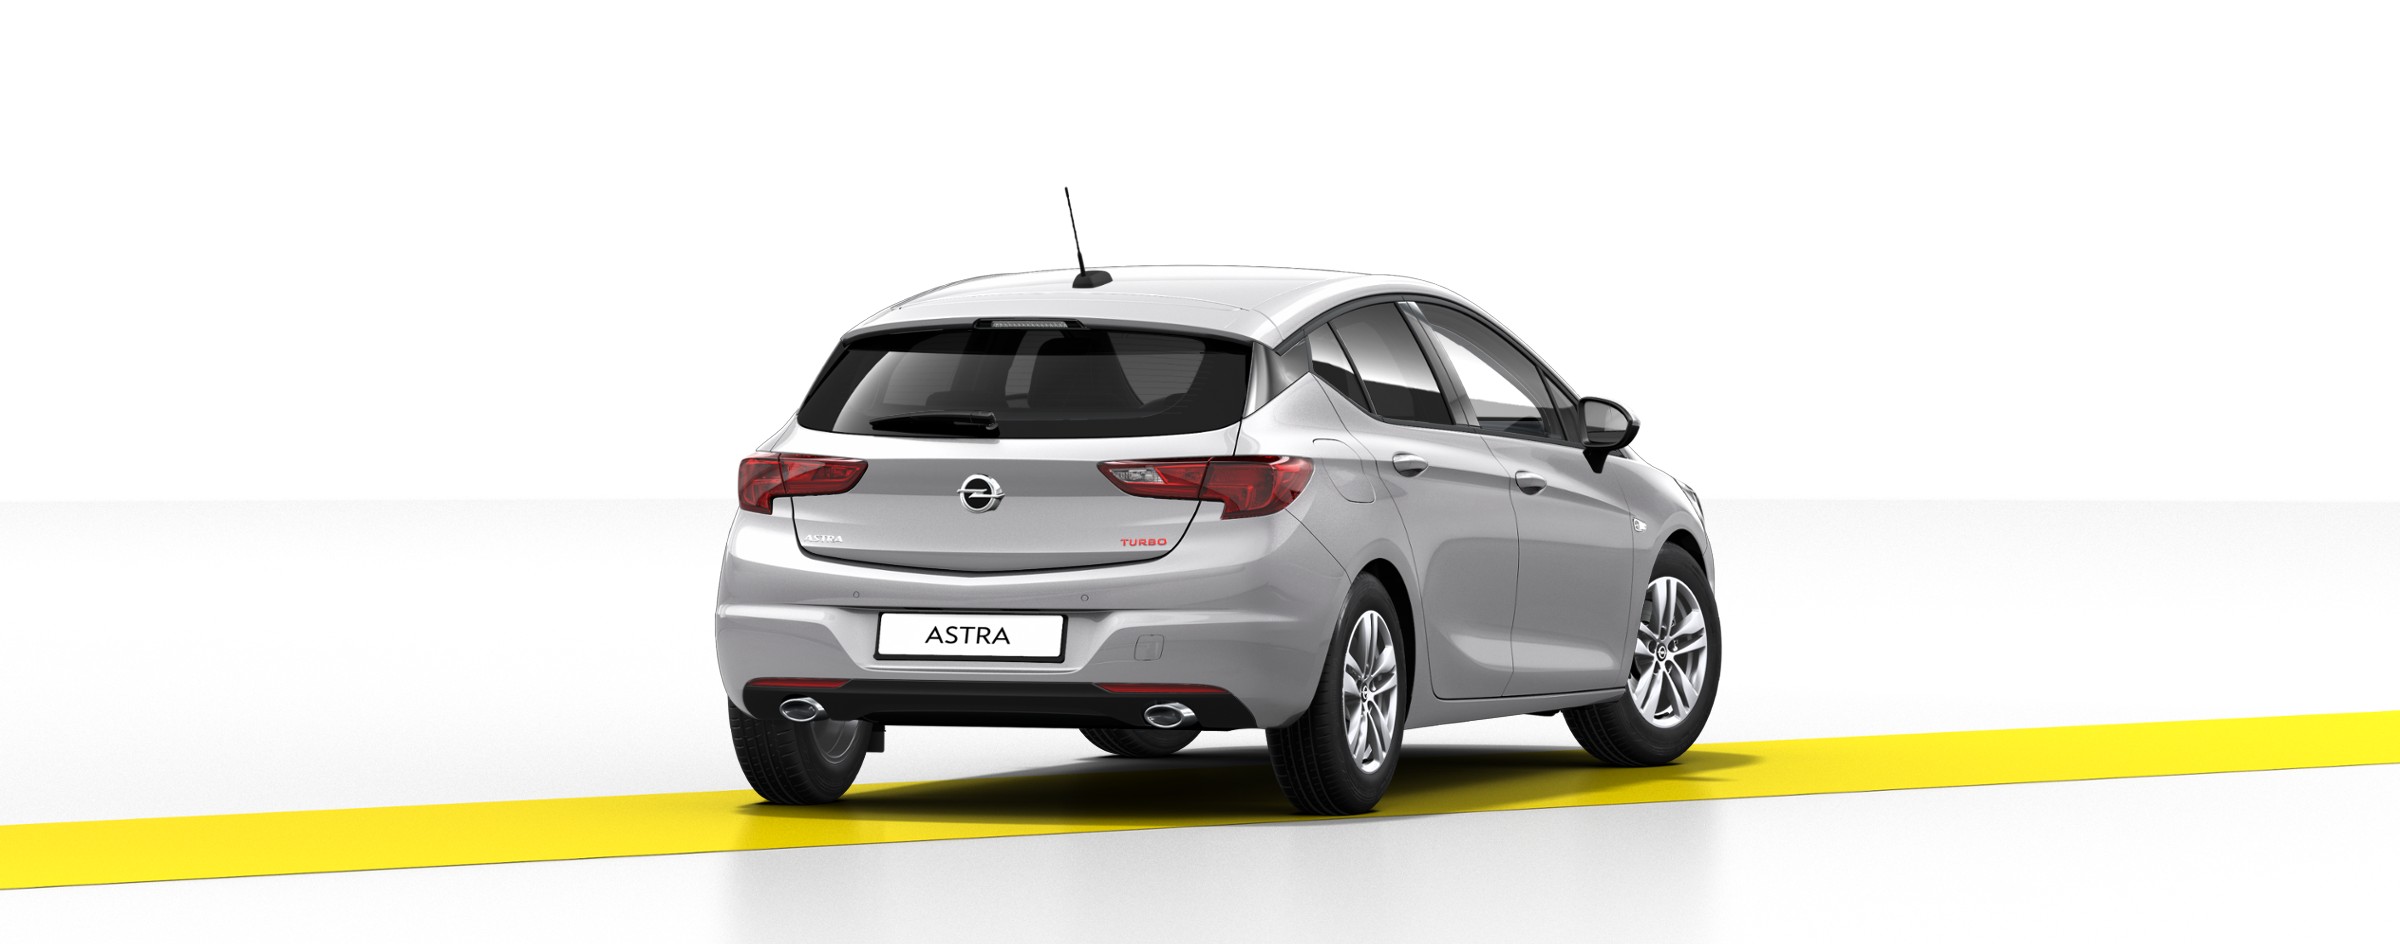 Yeni Opel Astra K 1.6 lt 200 PS Özellikleri 